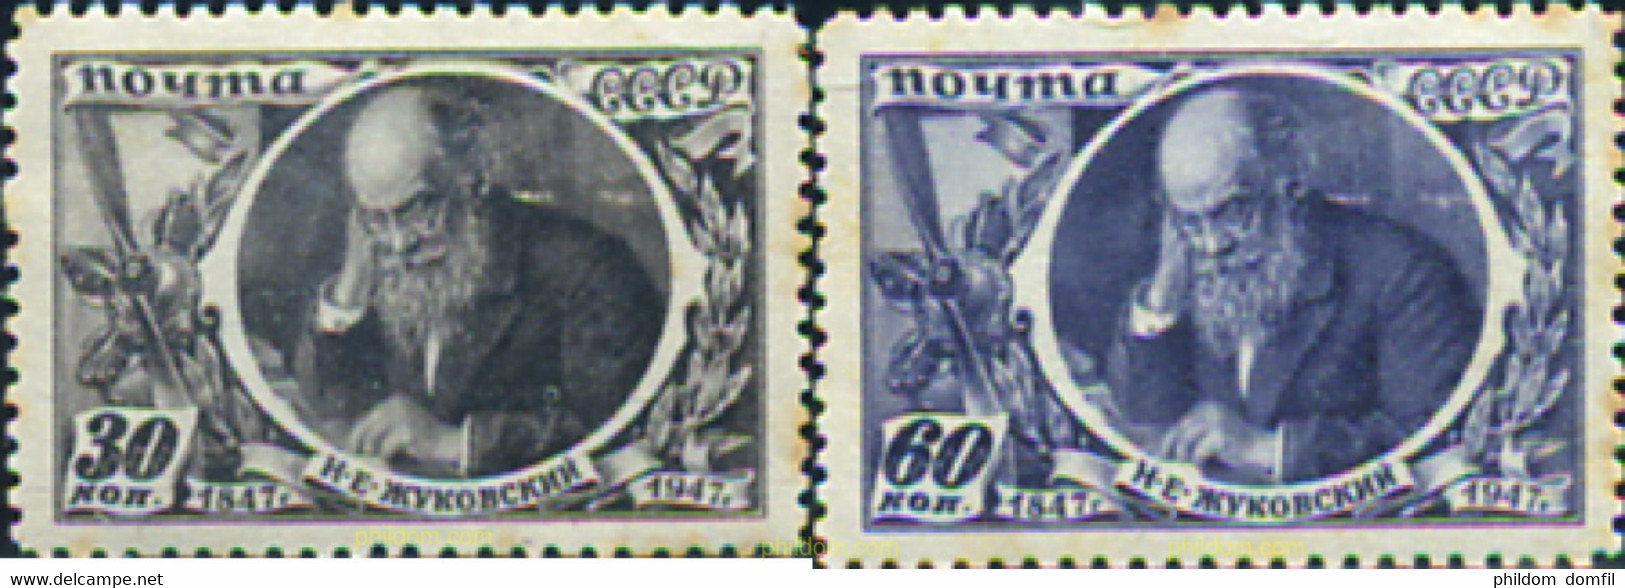 356391 MNH UNION SOVIETICA 1947 PERSONAJE - Colecciones